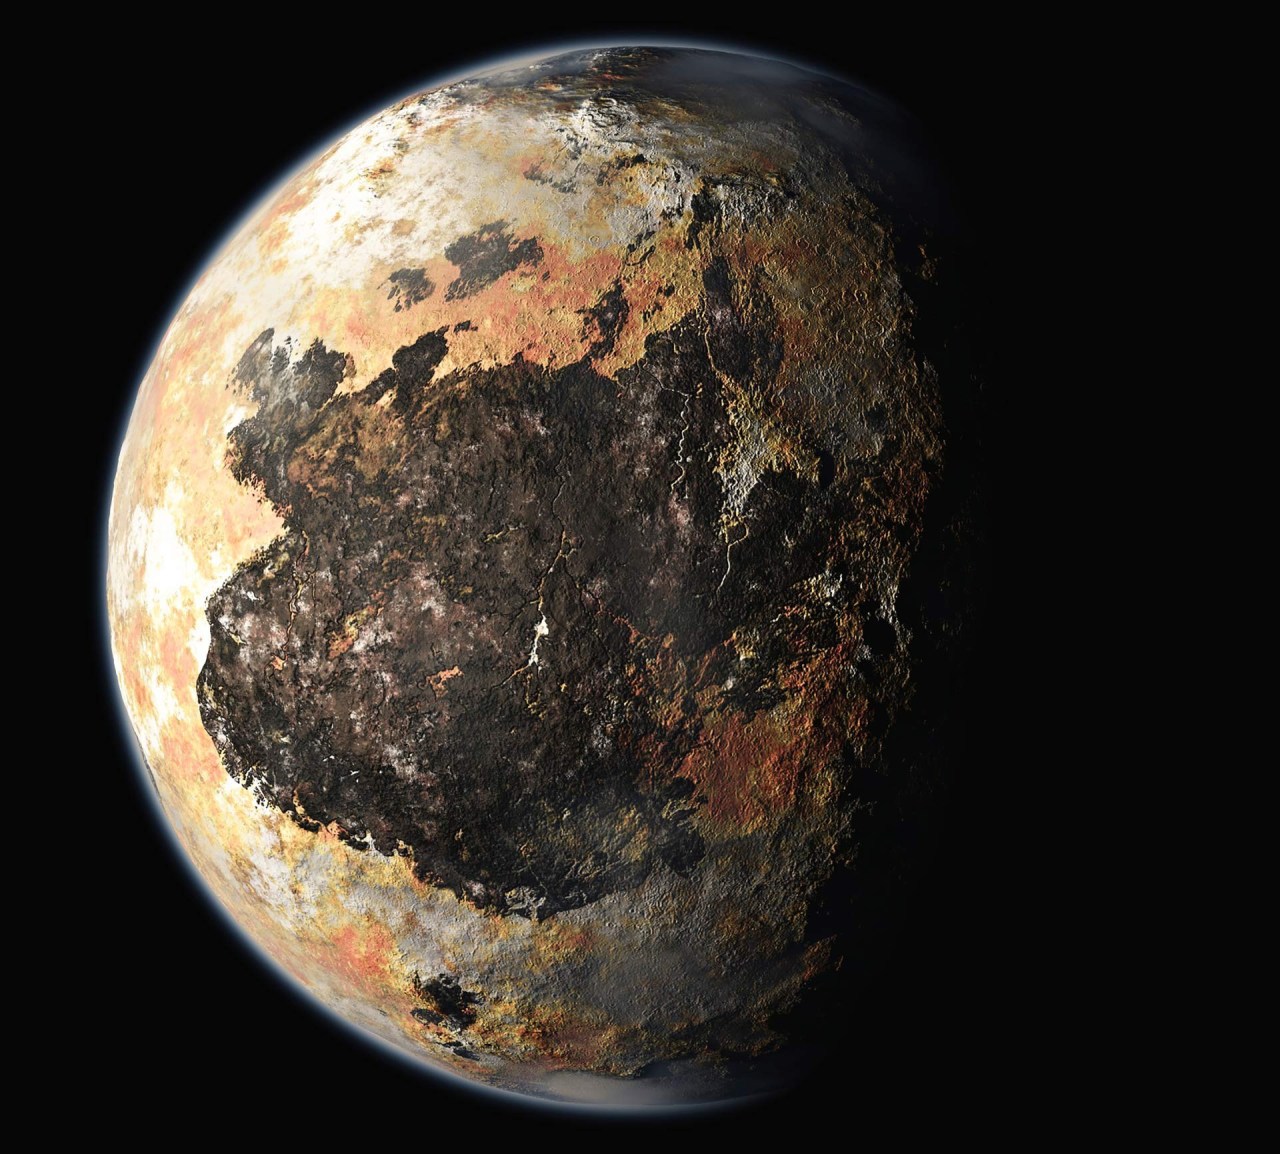 Zdjęcie powierzchni planety ukazujące szczegóły powierzchni, zrobione z dużej wysokości